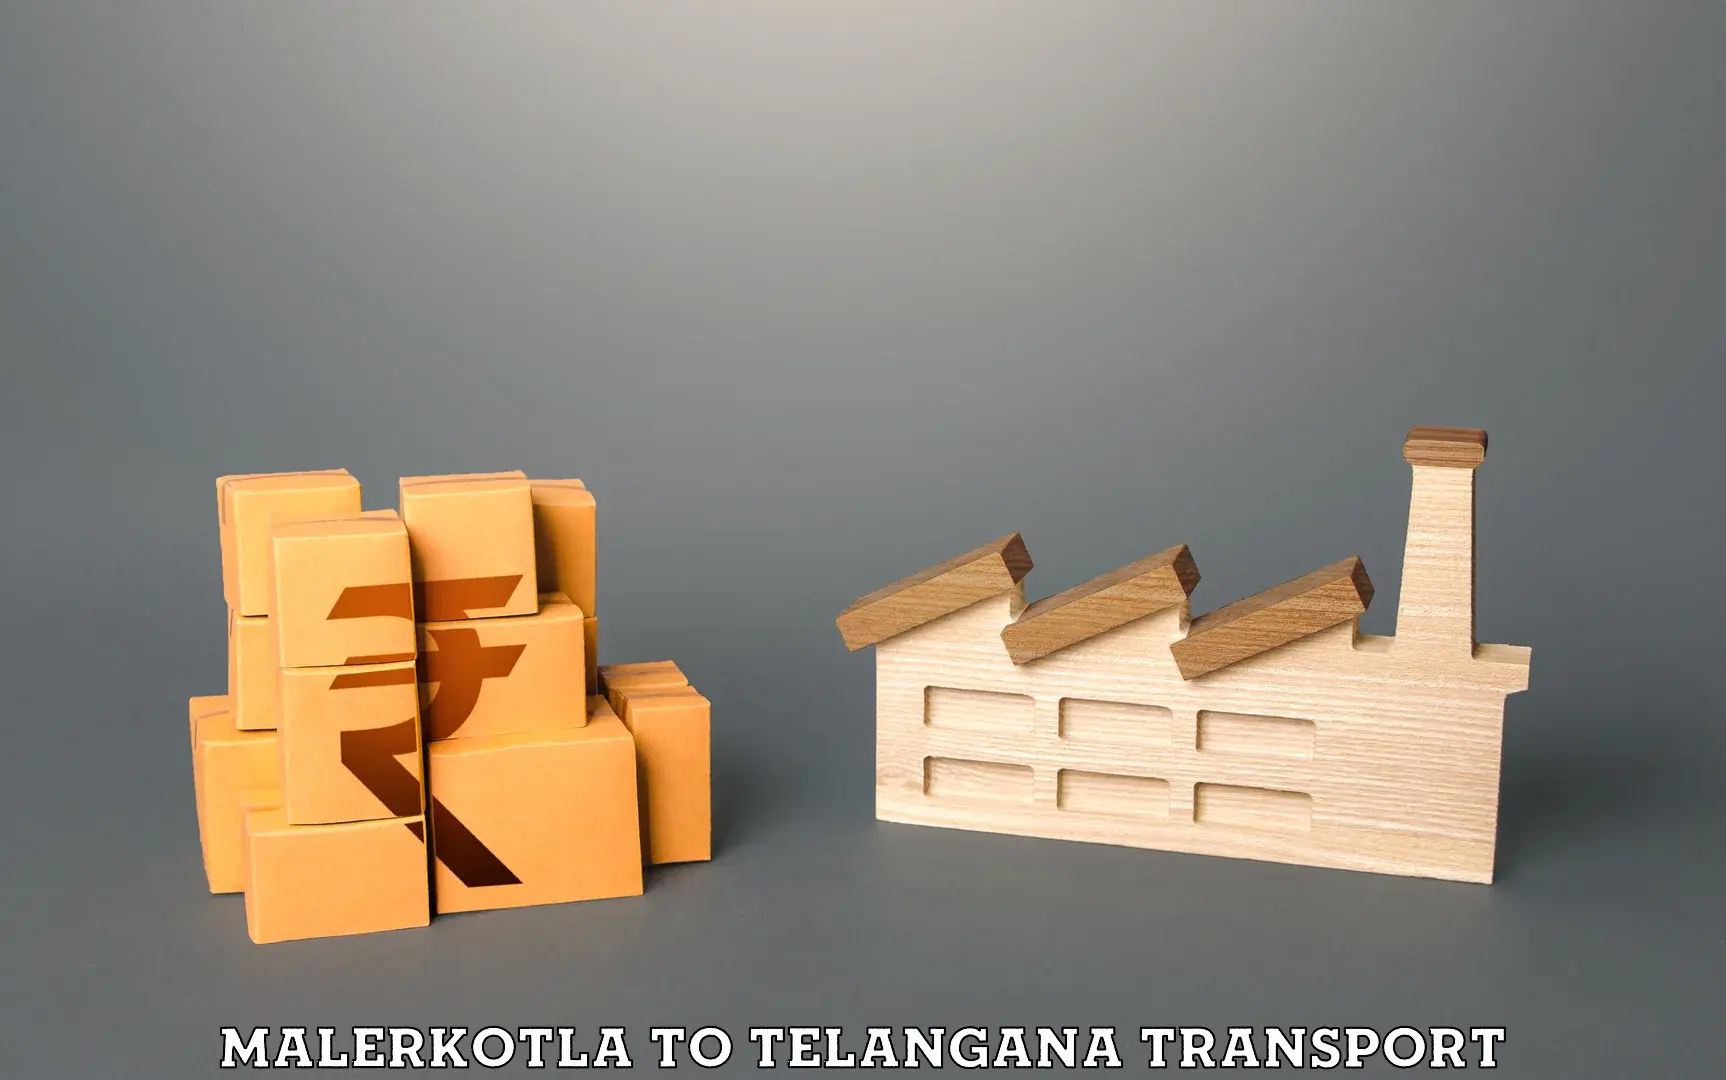 Transport shared services in Malerkotla to Vikarabad